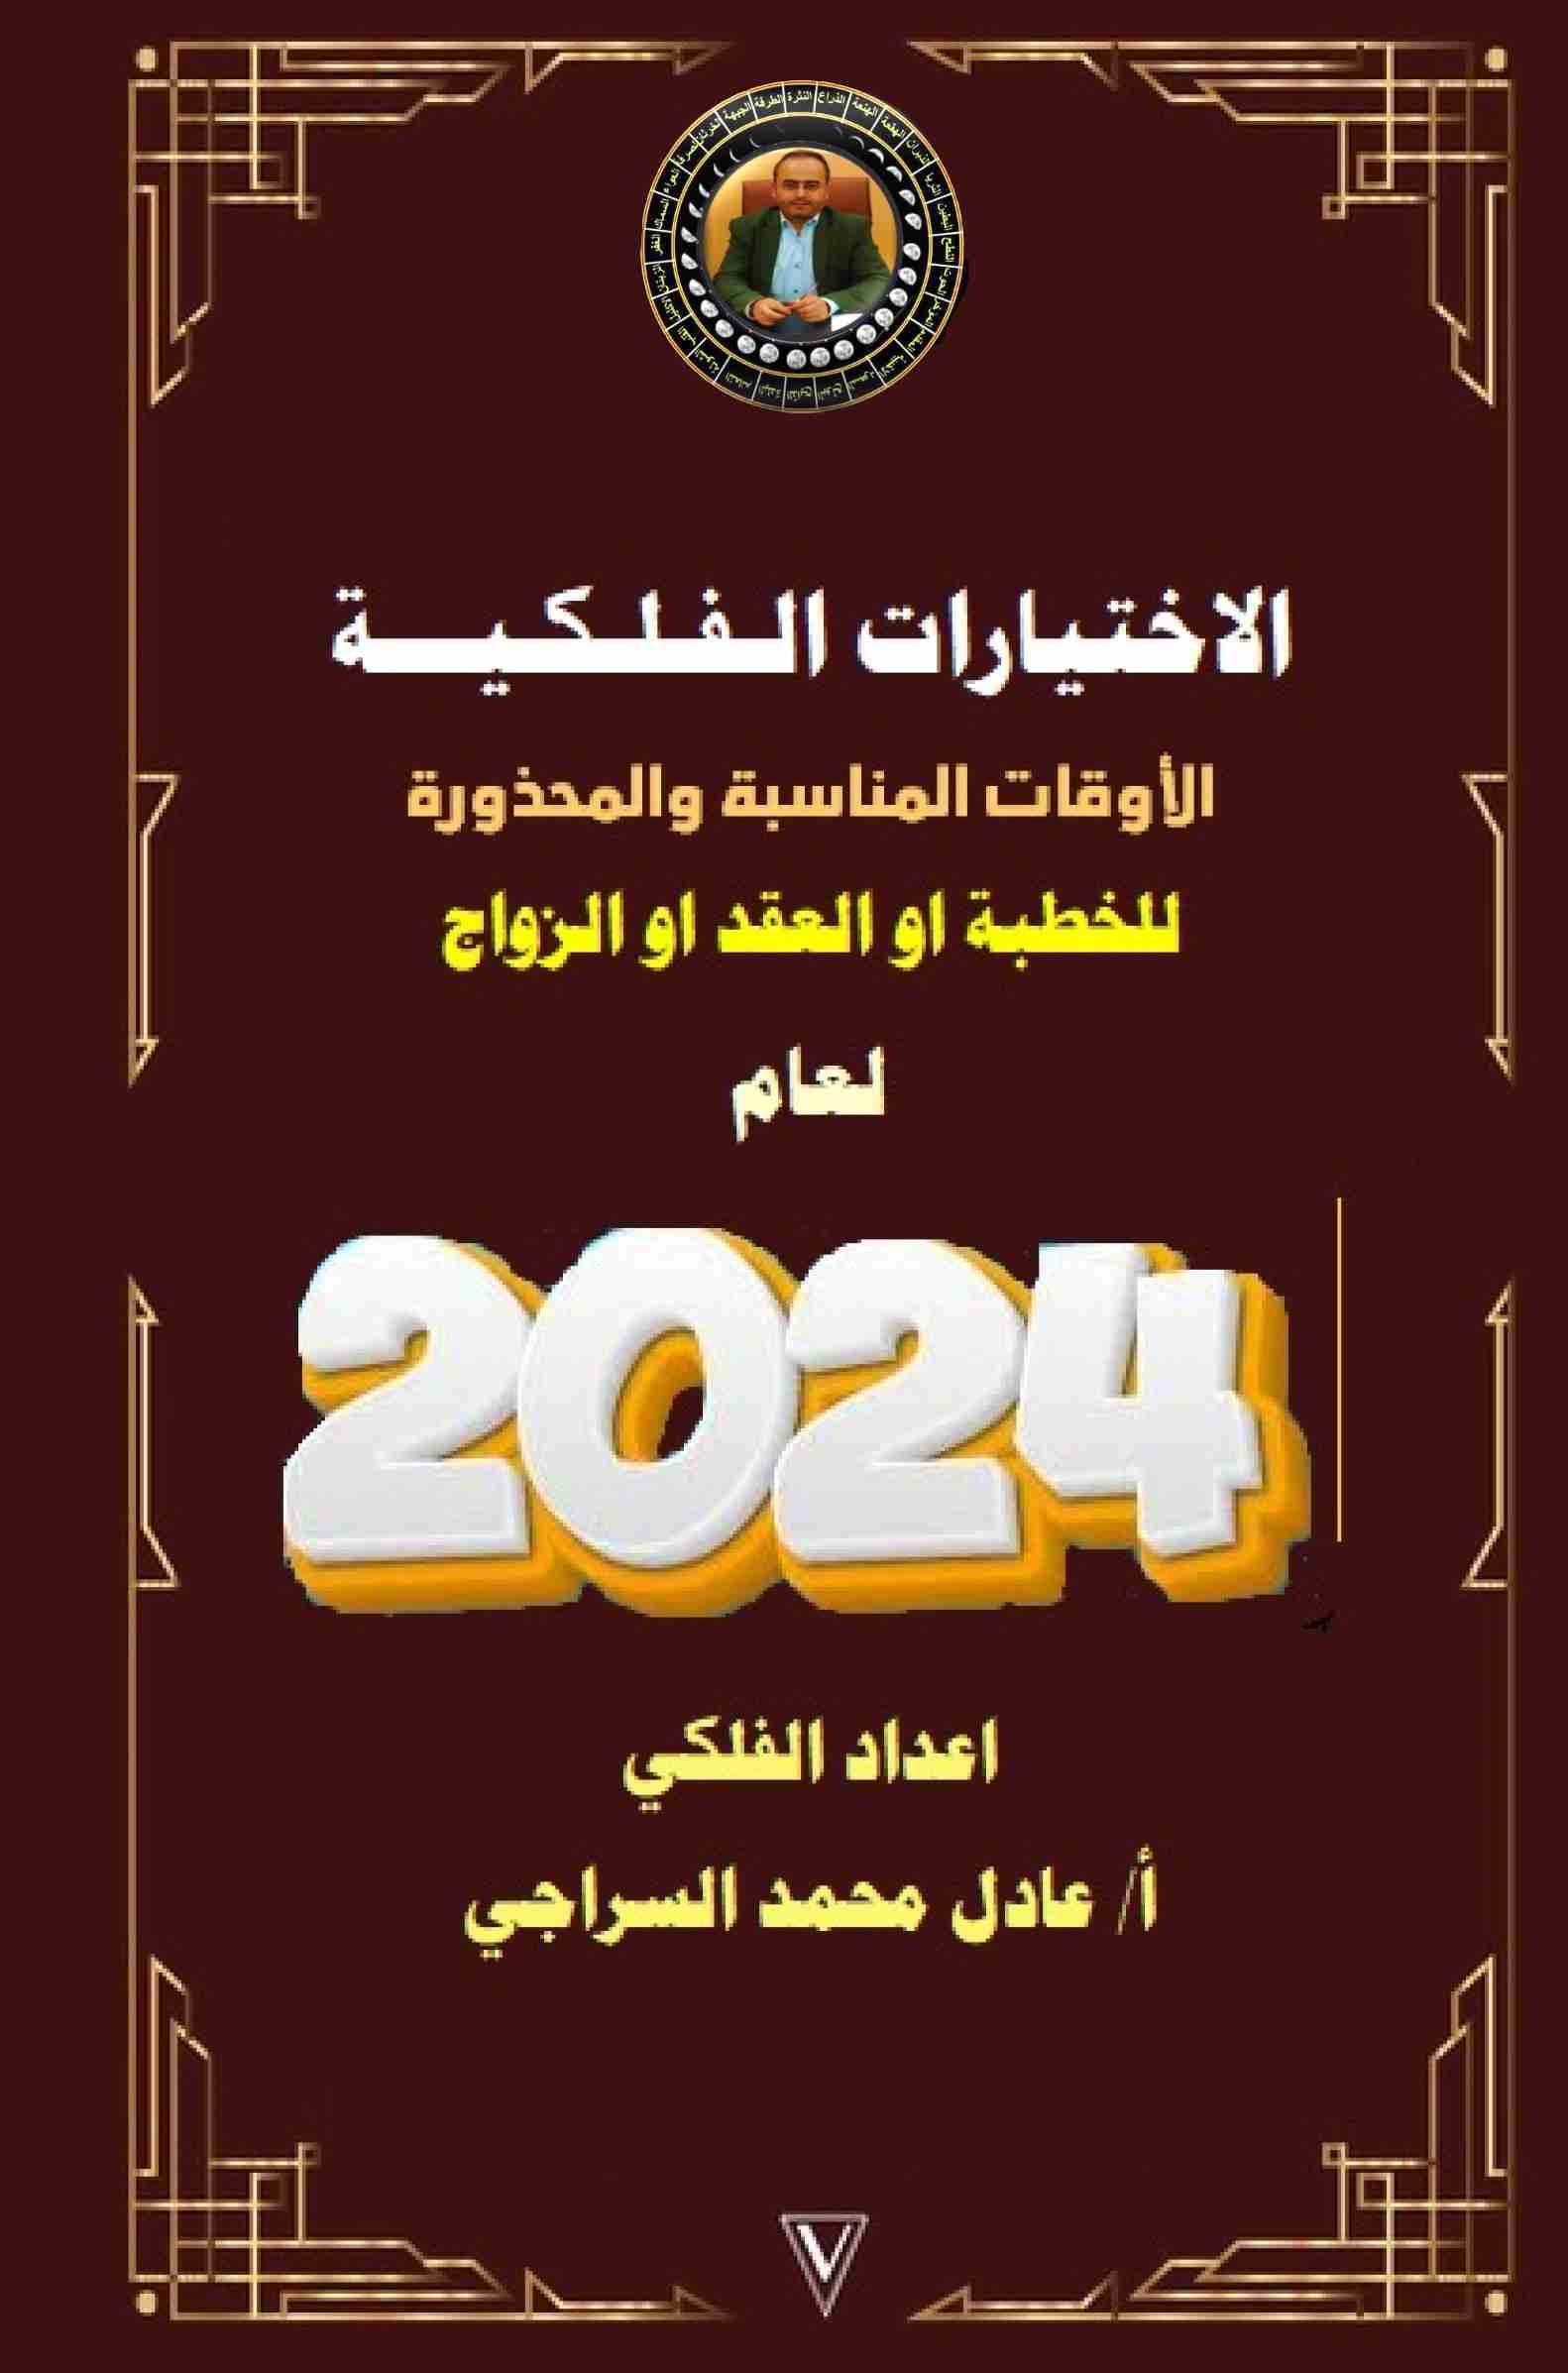 كتاب الاختيارات الفلكية المناسبة للخطبة او العقد او الزواج لعام 2024م لـ عادل محمد السراجي